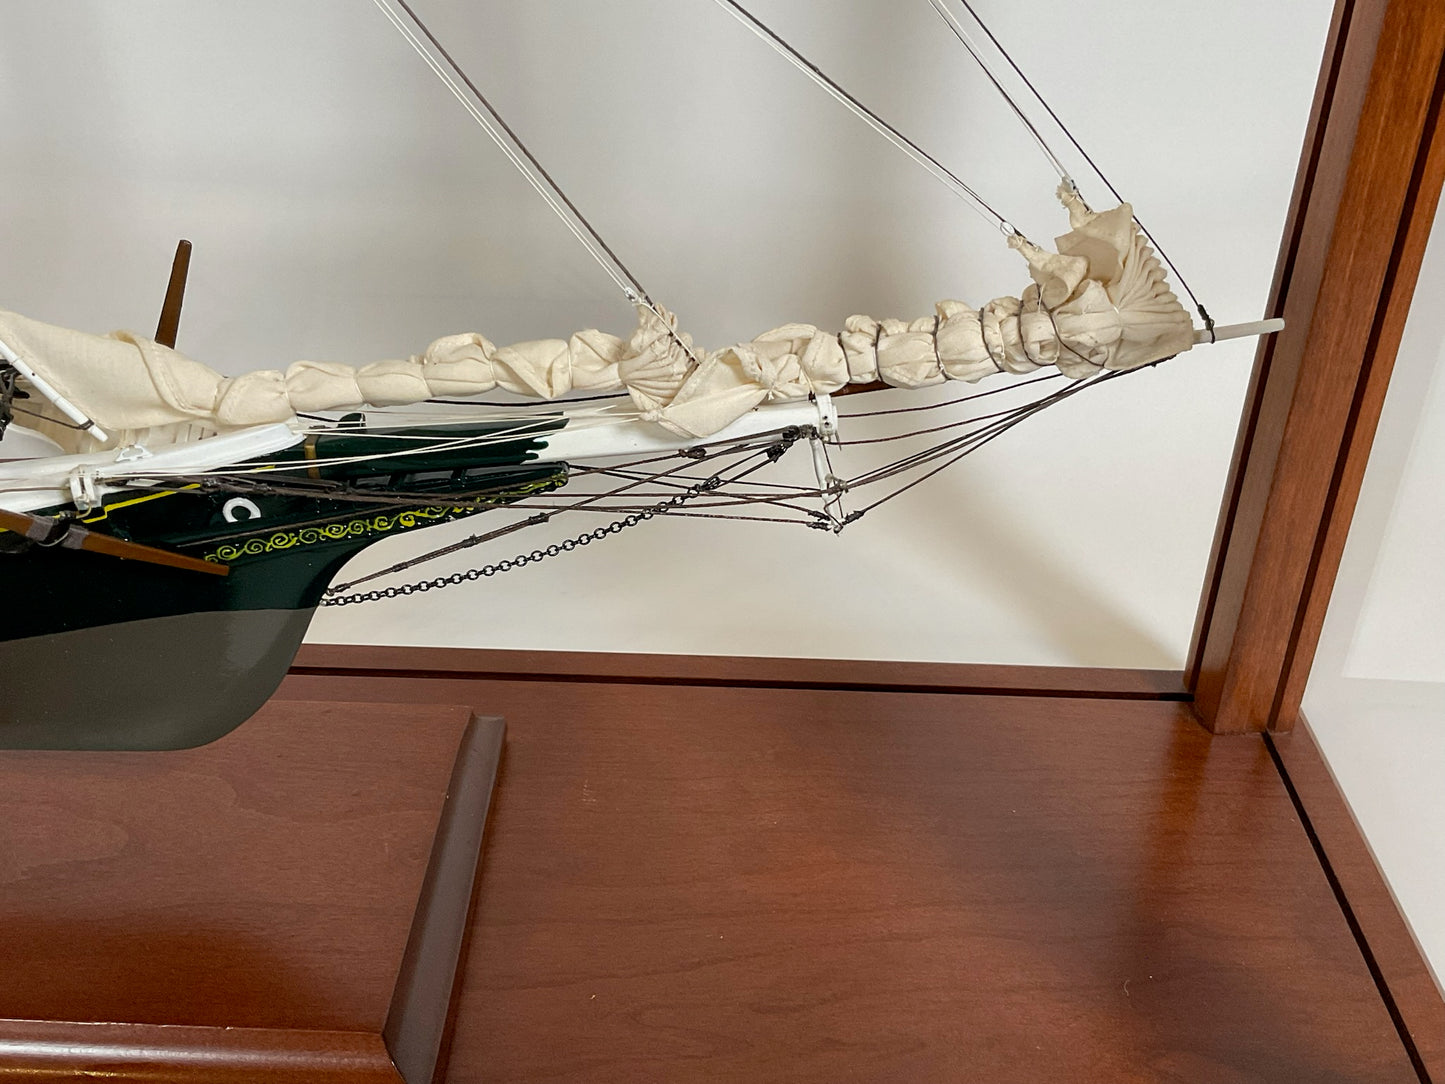 Fishing Schooner Model of "Mystic"